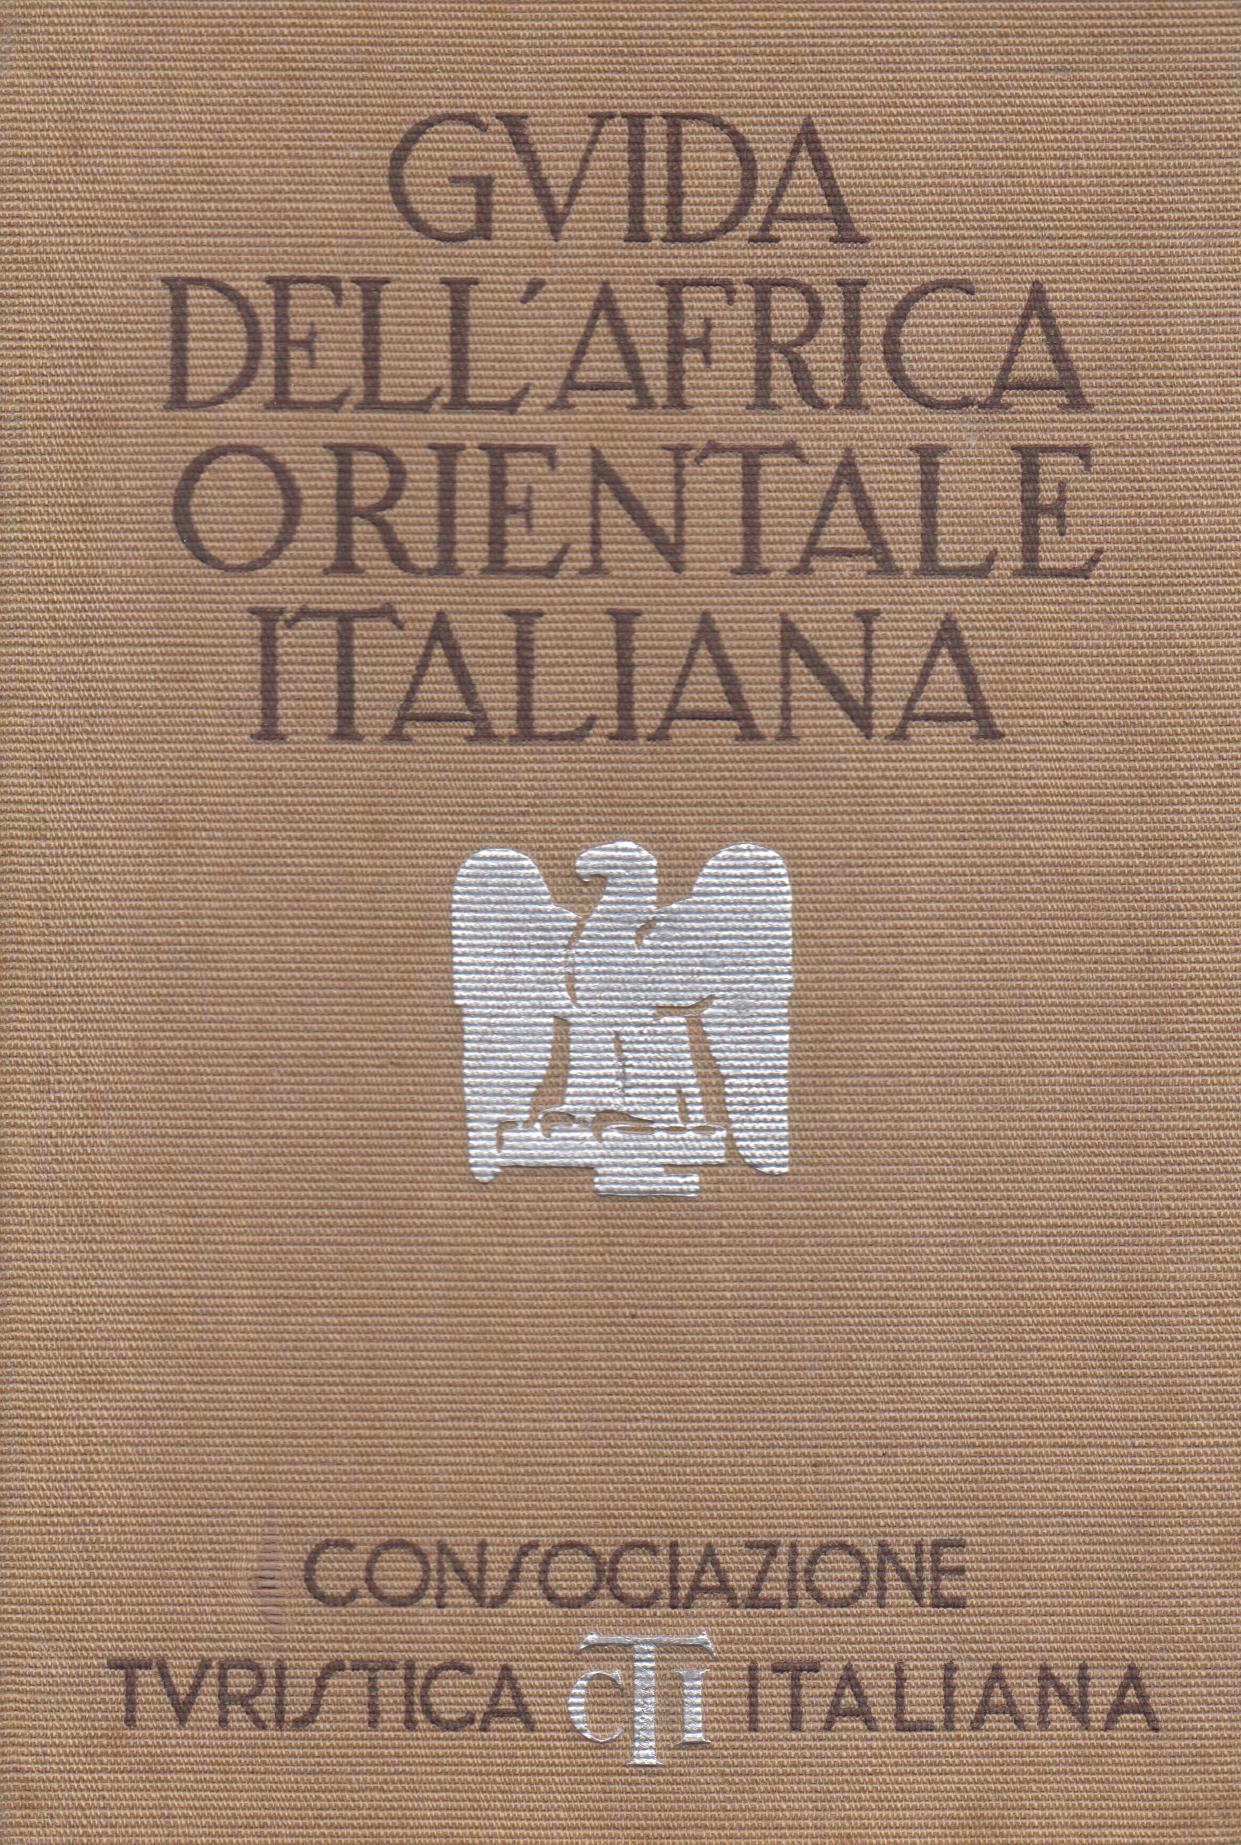 Guida dell'Africa Orientale Italiana